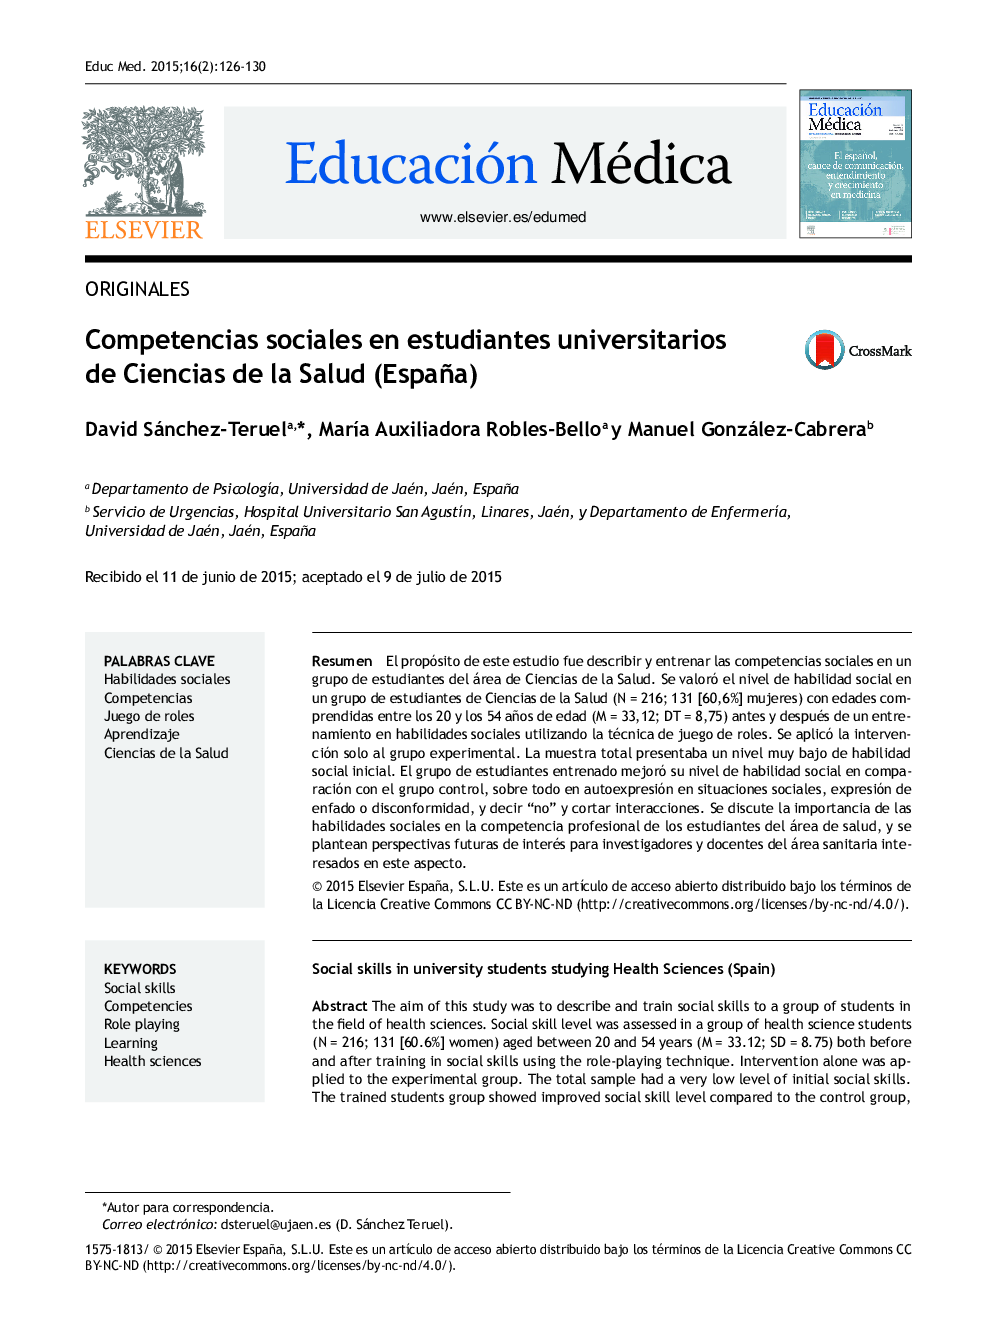 Competencias sociales en estudiantes universitarios de Ciencias de la Salud (España)